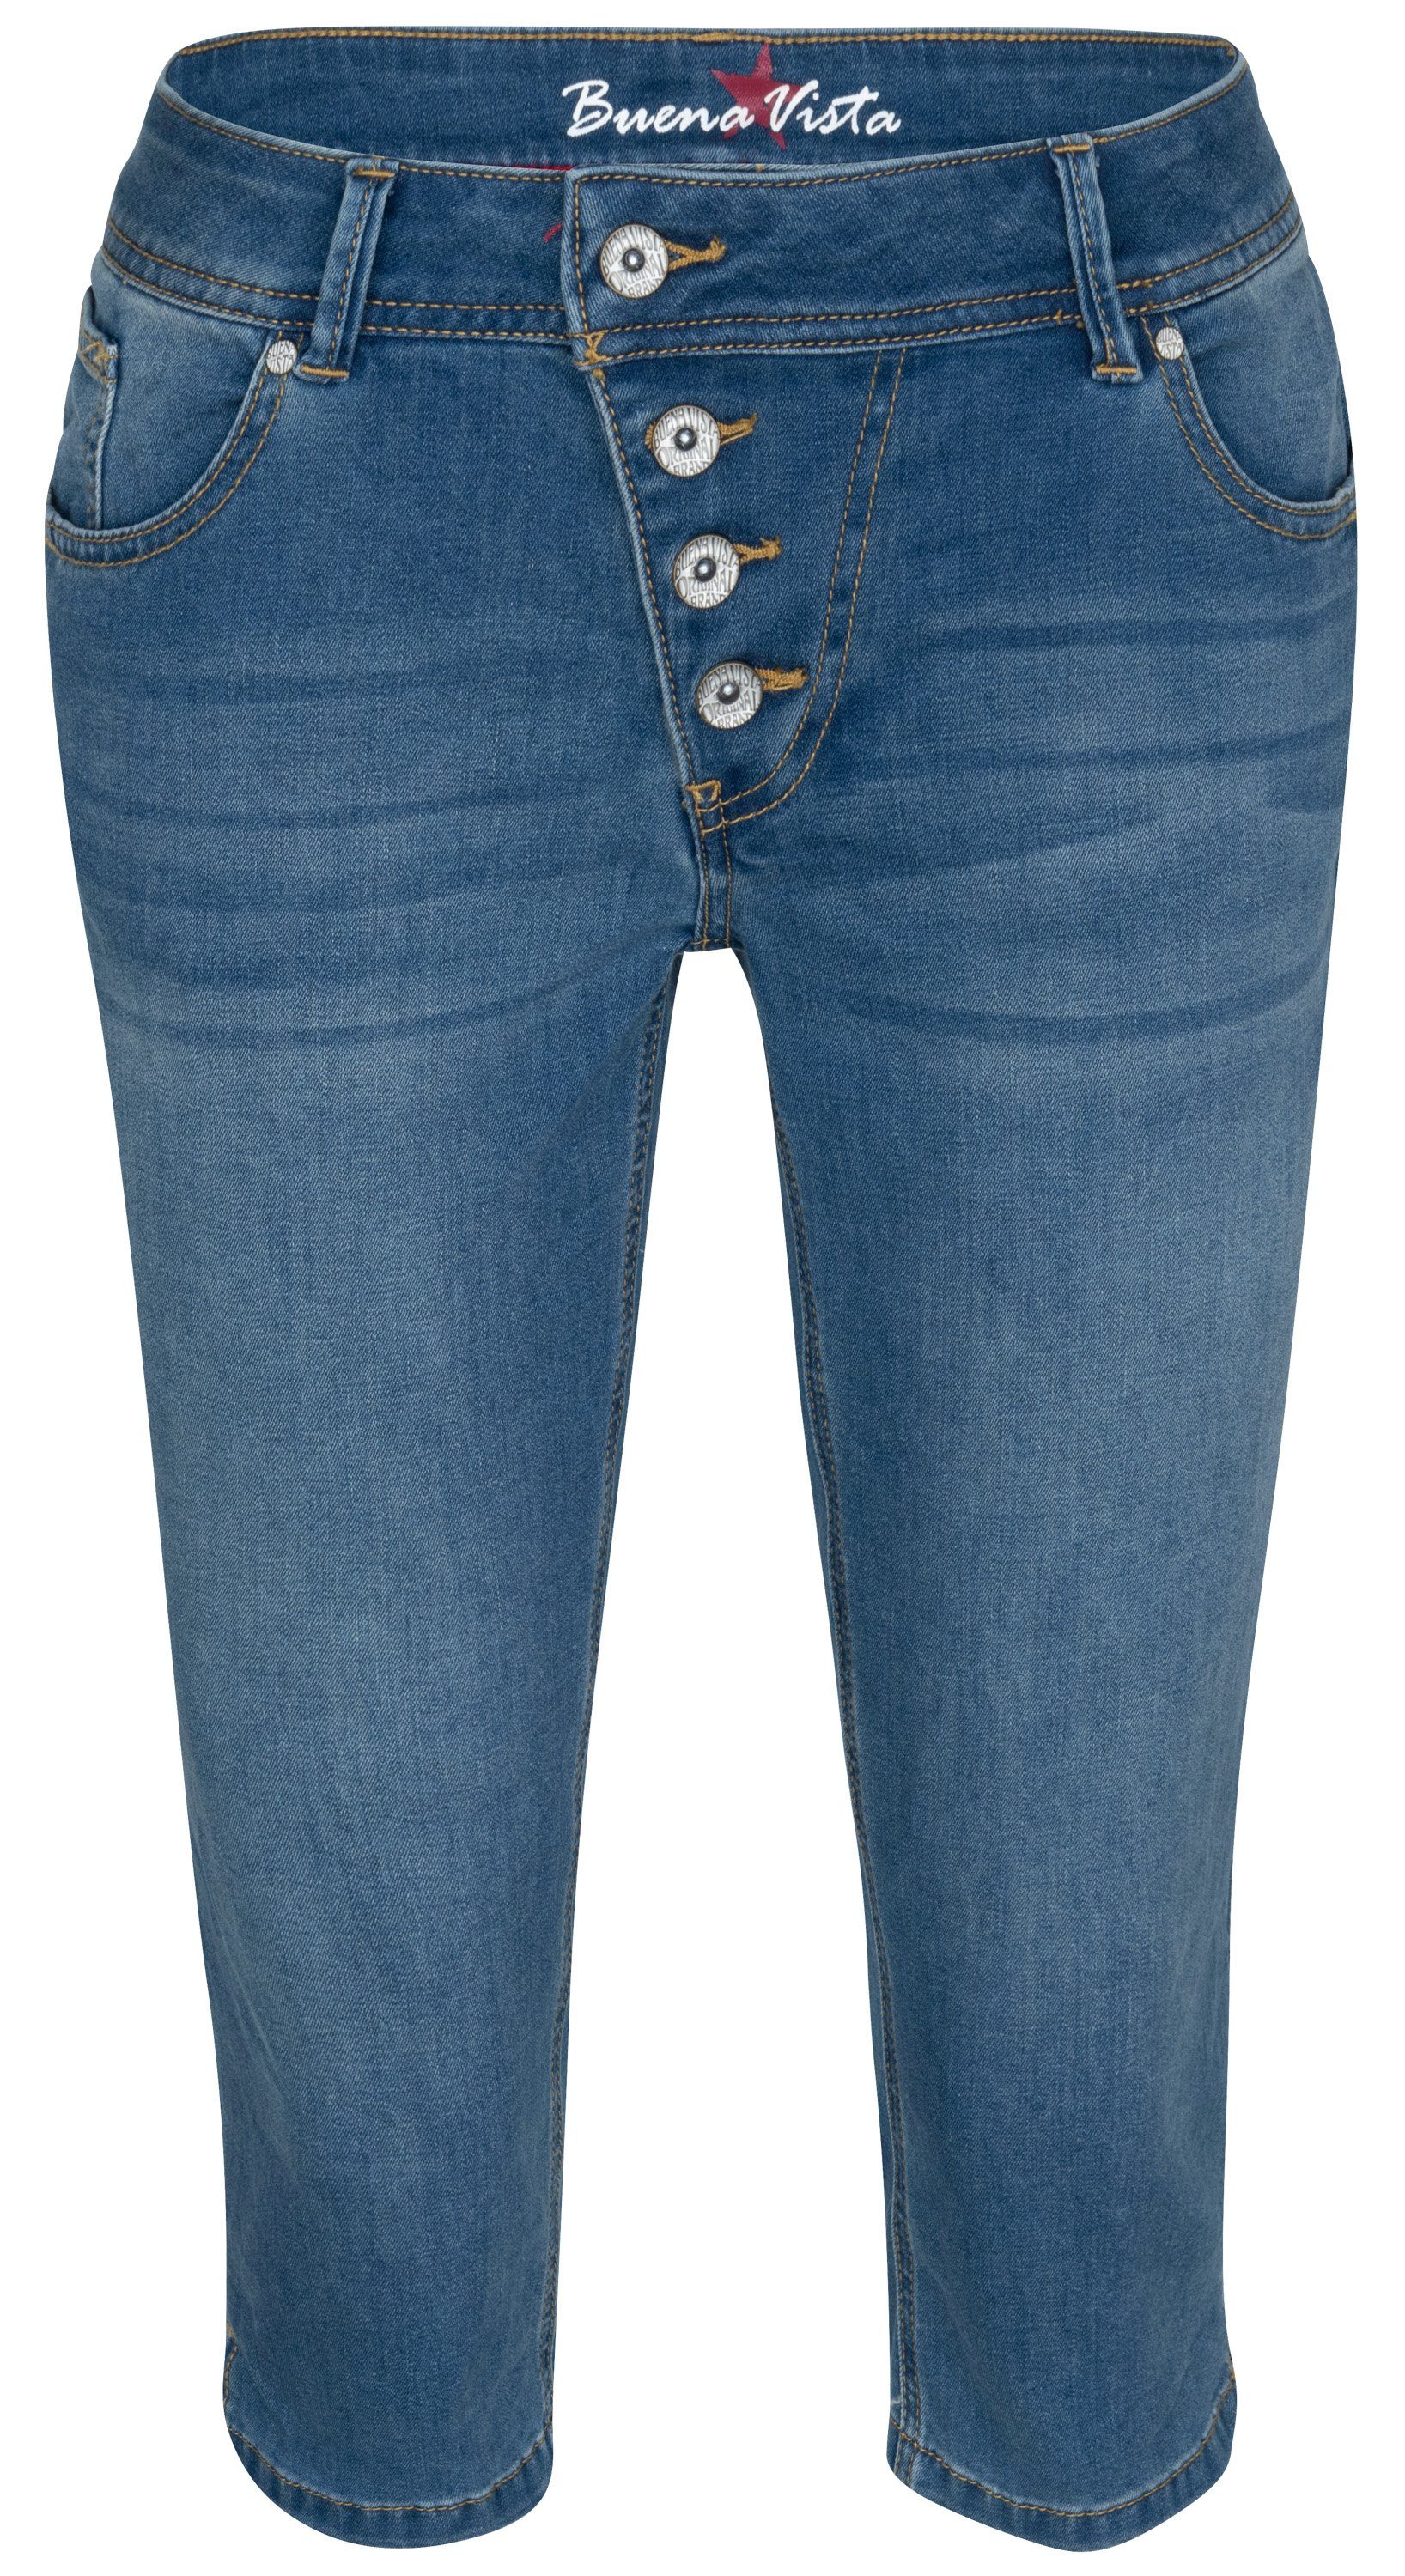 Buena Vista Stretch-Jeans BUENA VISTA MALIBU CAPRI spring blue 888 B5232 362.8018 - Stretch